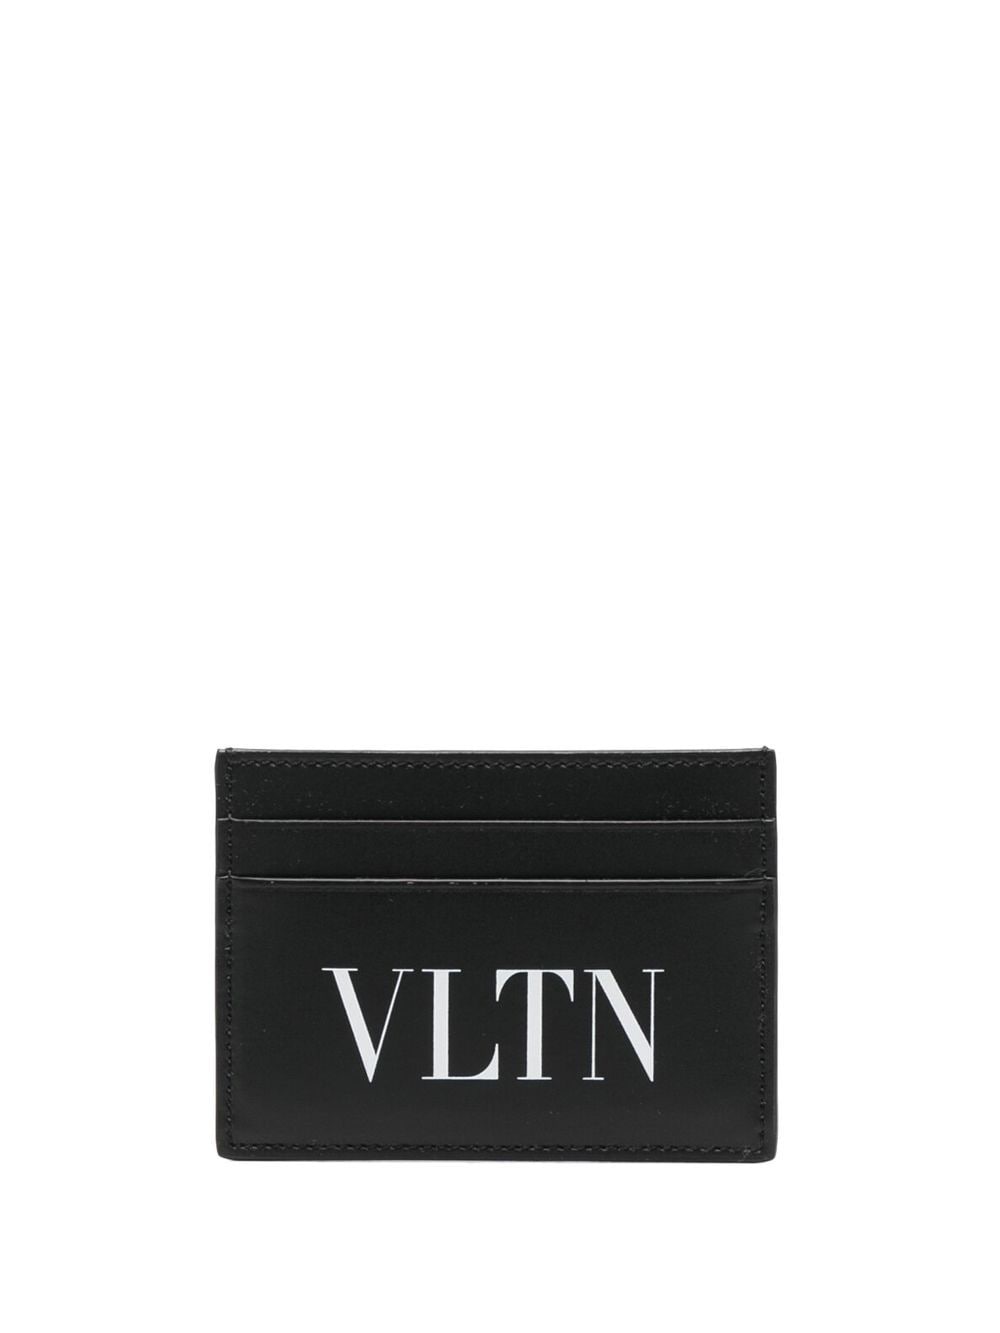 VLTN leather cardholder<BR/><BR/><BR/>